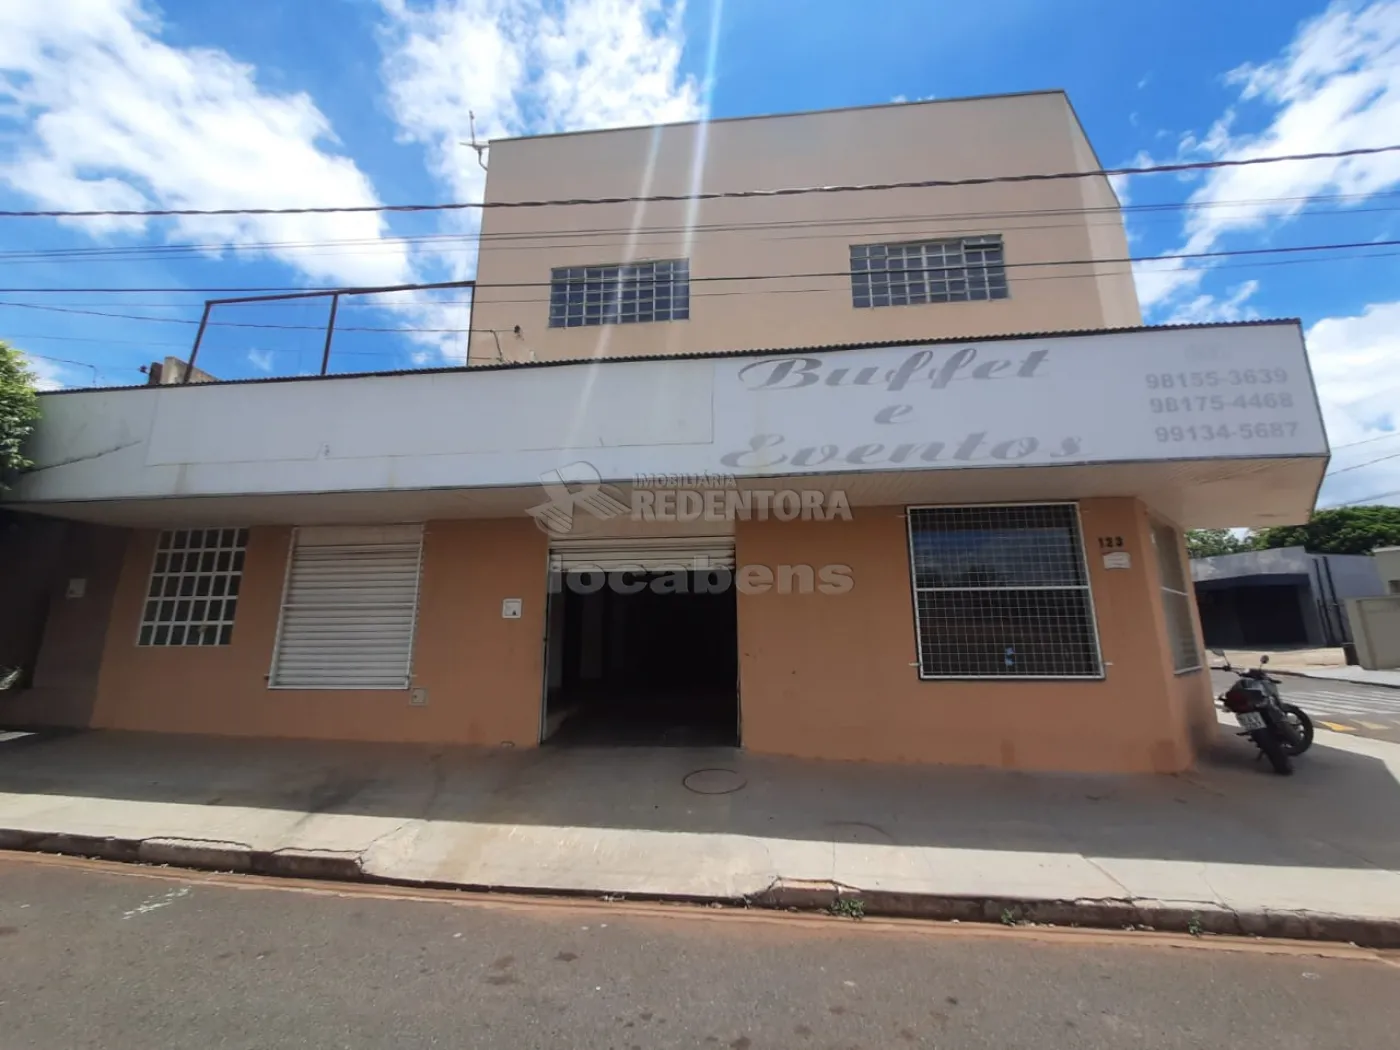 Alugar Comercial / Prédio Inteiro em Guapiaçu R$ 10.000,00 - Foto 1